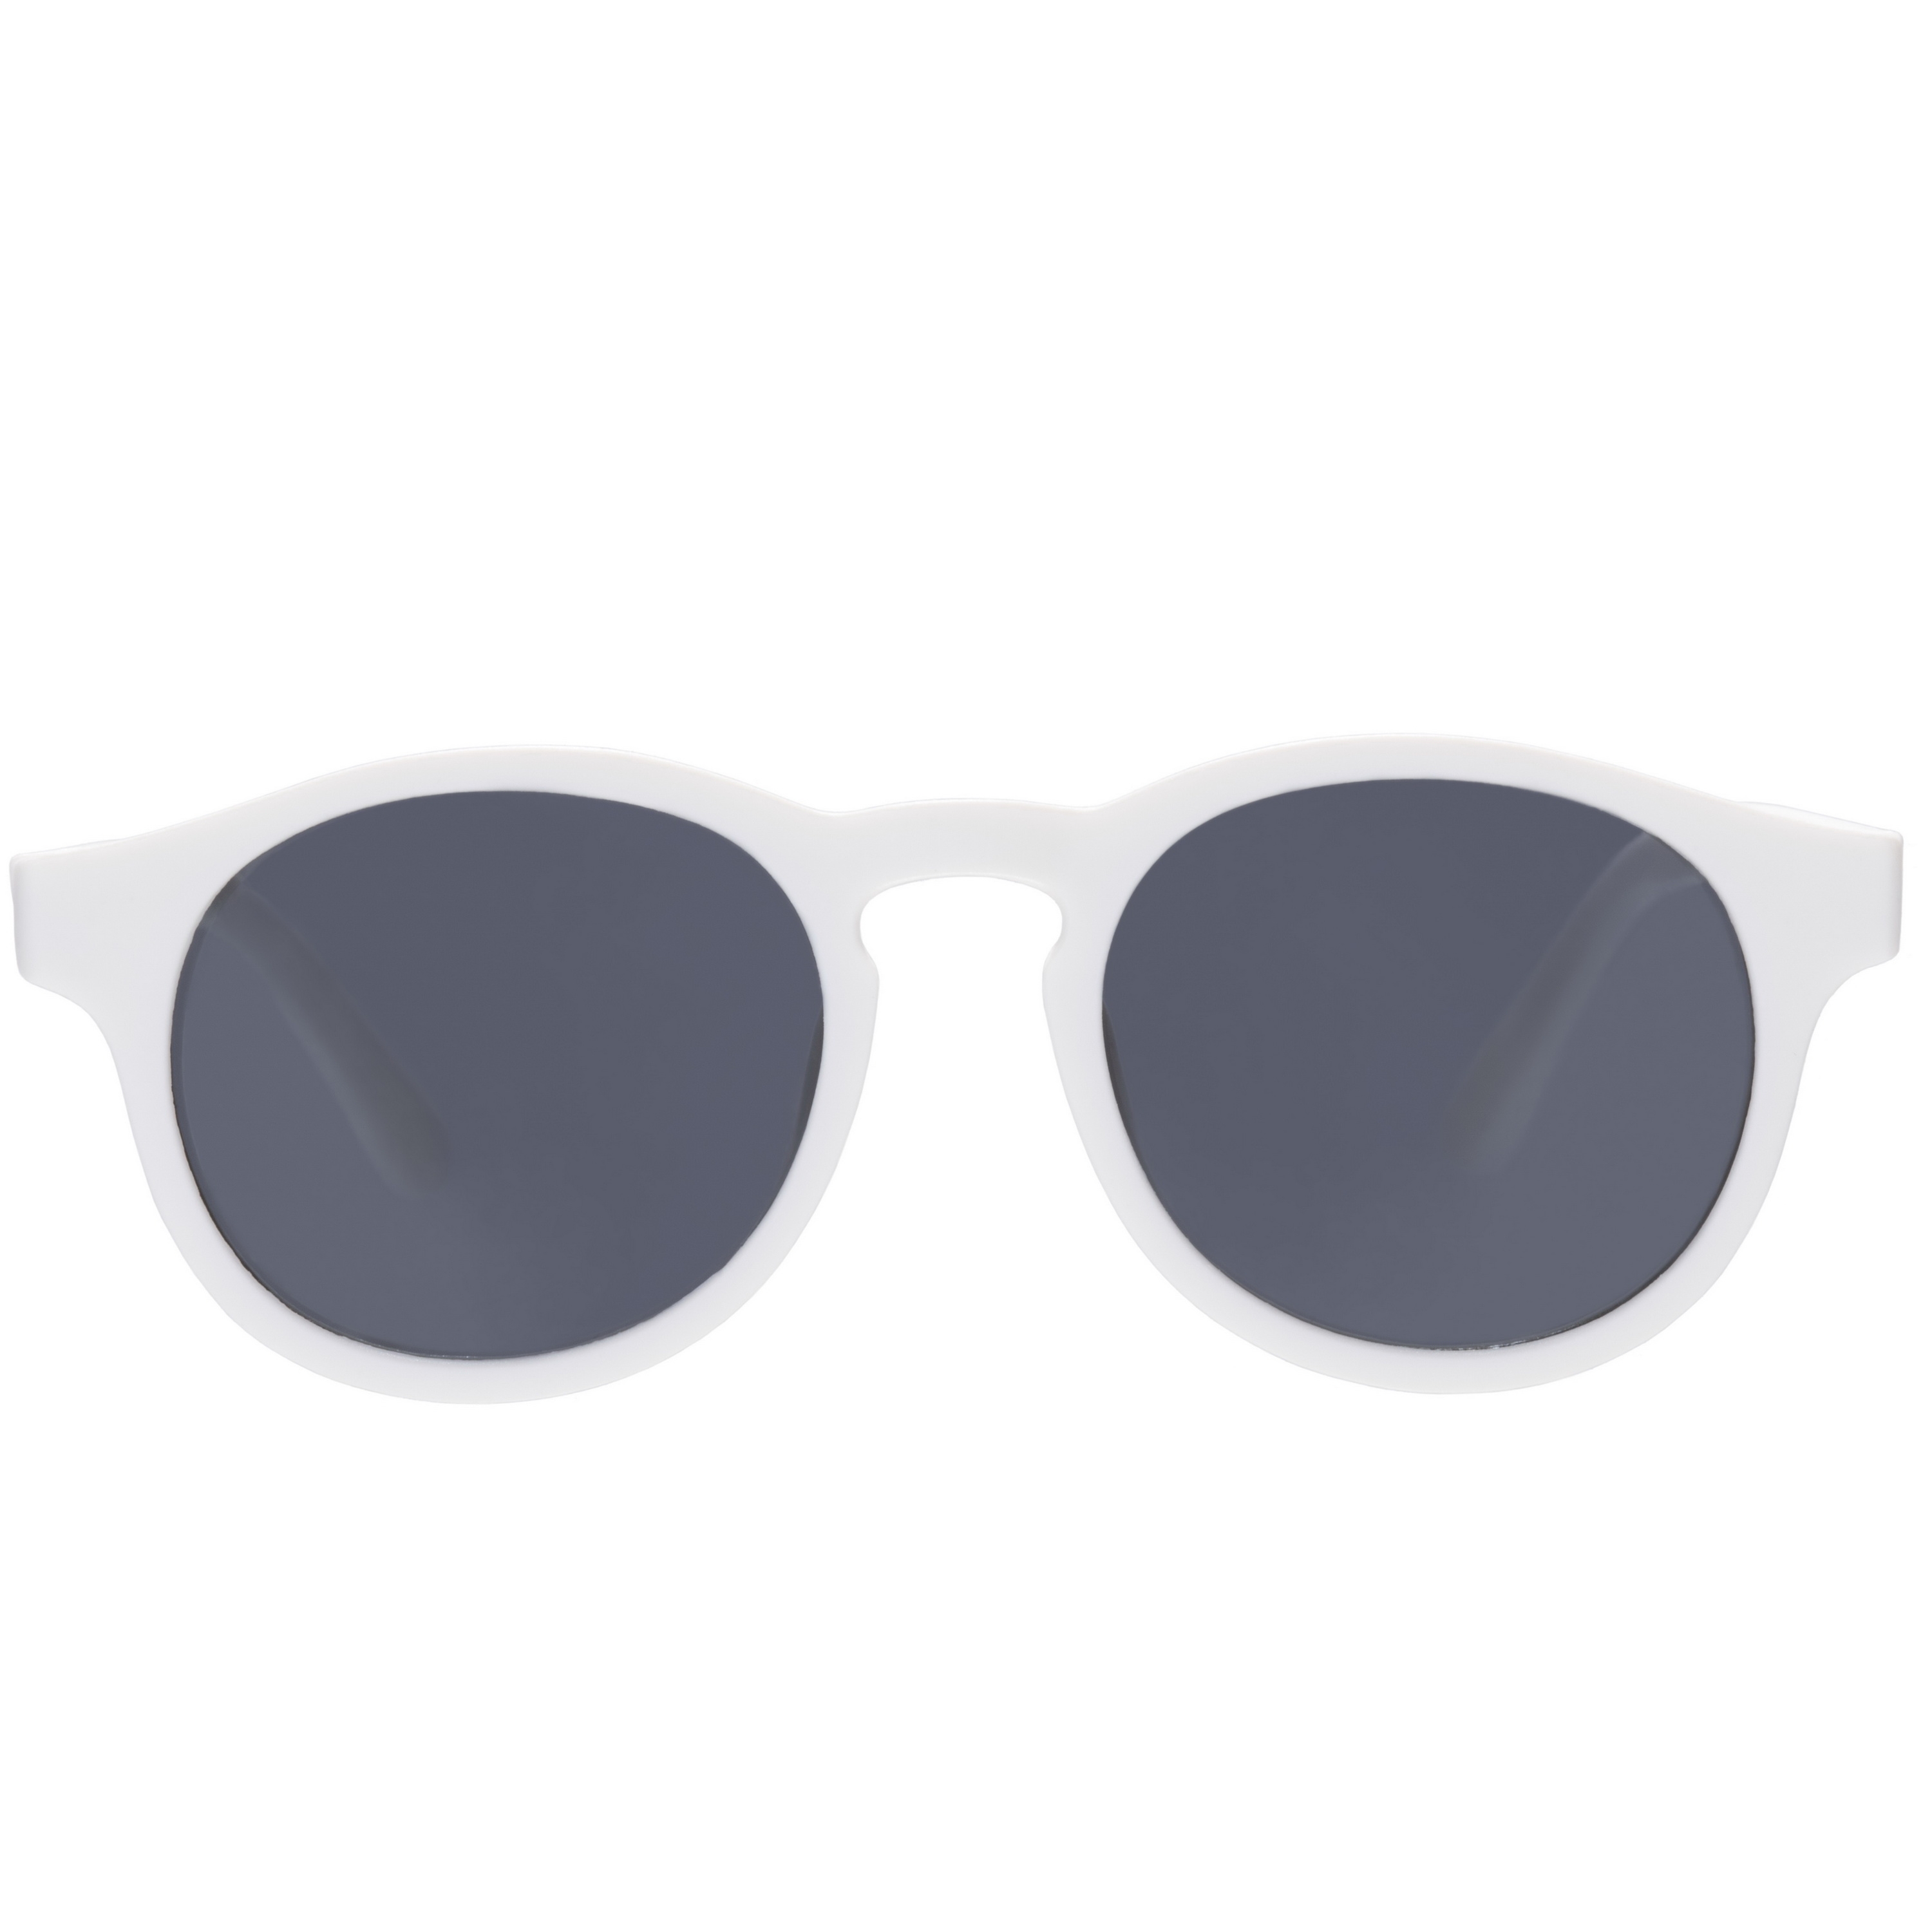 Солнцезащитные очки - Babiators Original Keyhole. Шаловливый белый/Wicked White, белые/дымчатые, Junior  